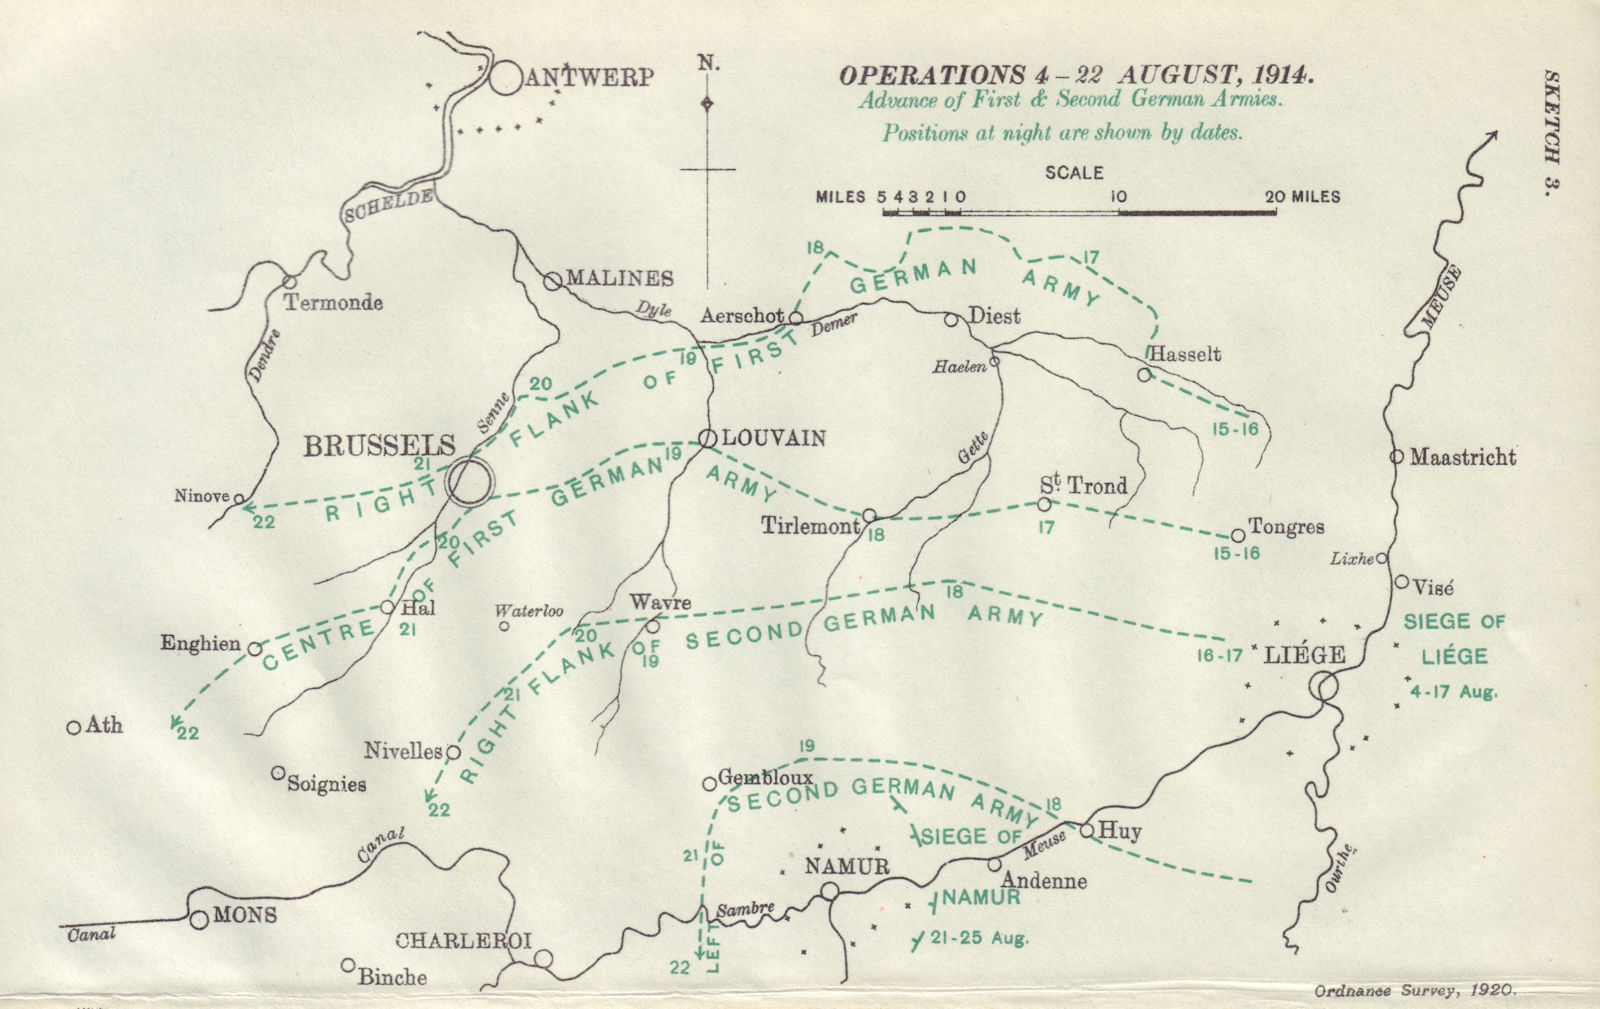 1st & 2nd German Armies advance, 4-22 August, 1914. First World War. 1933 map